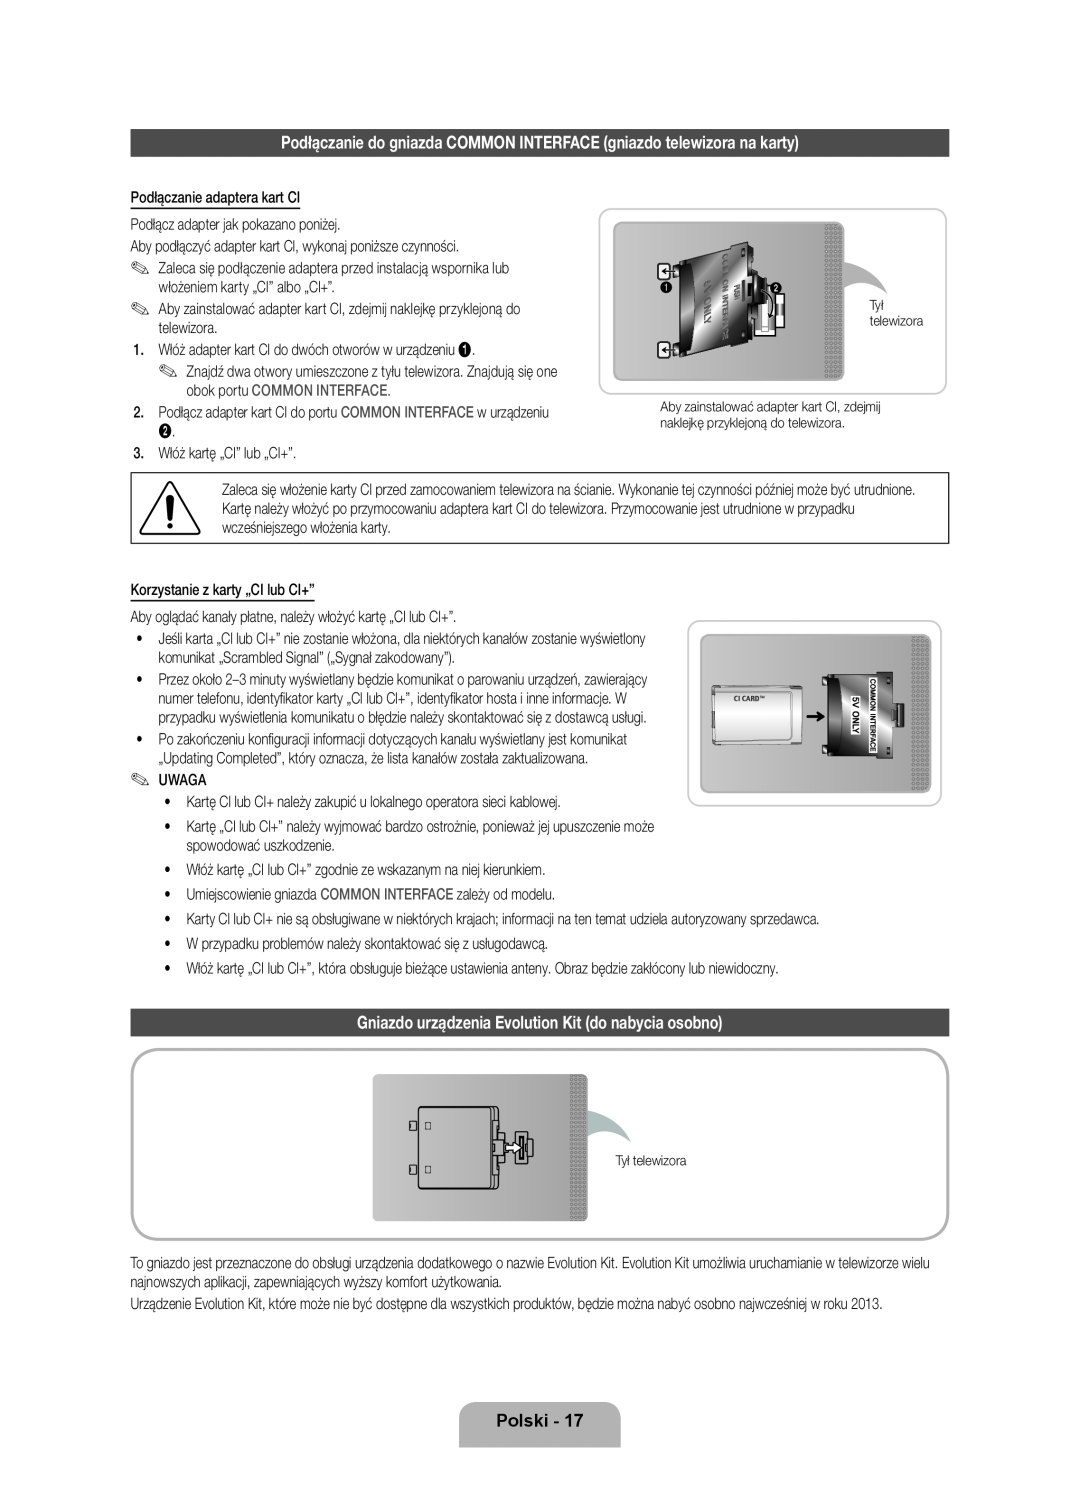 Samsung UE46ES8000SXXN, UE55ES8000SXXH manual Podłączanie do gniazda COMMON INTERFACE gniazdo telewizora na karty, Polski 